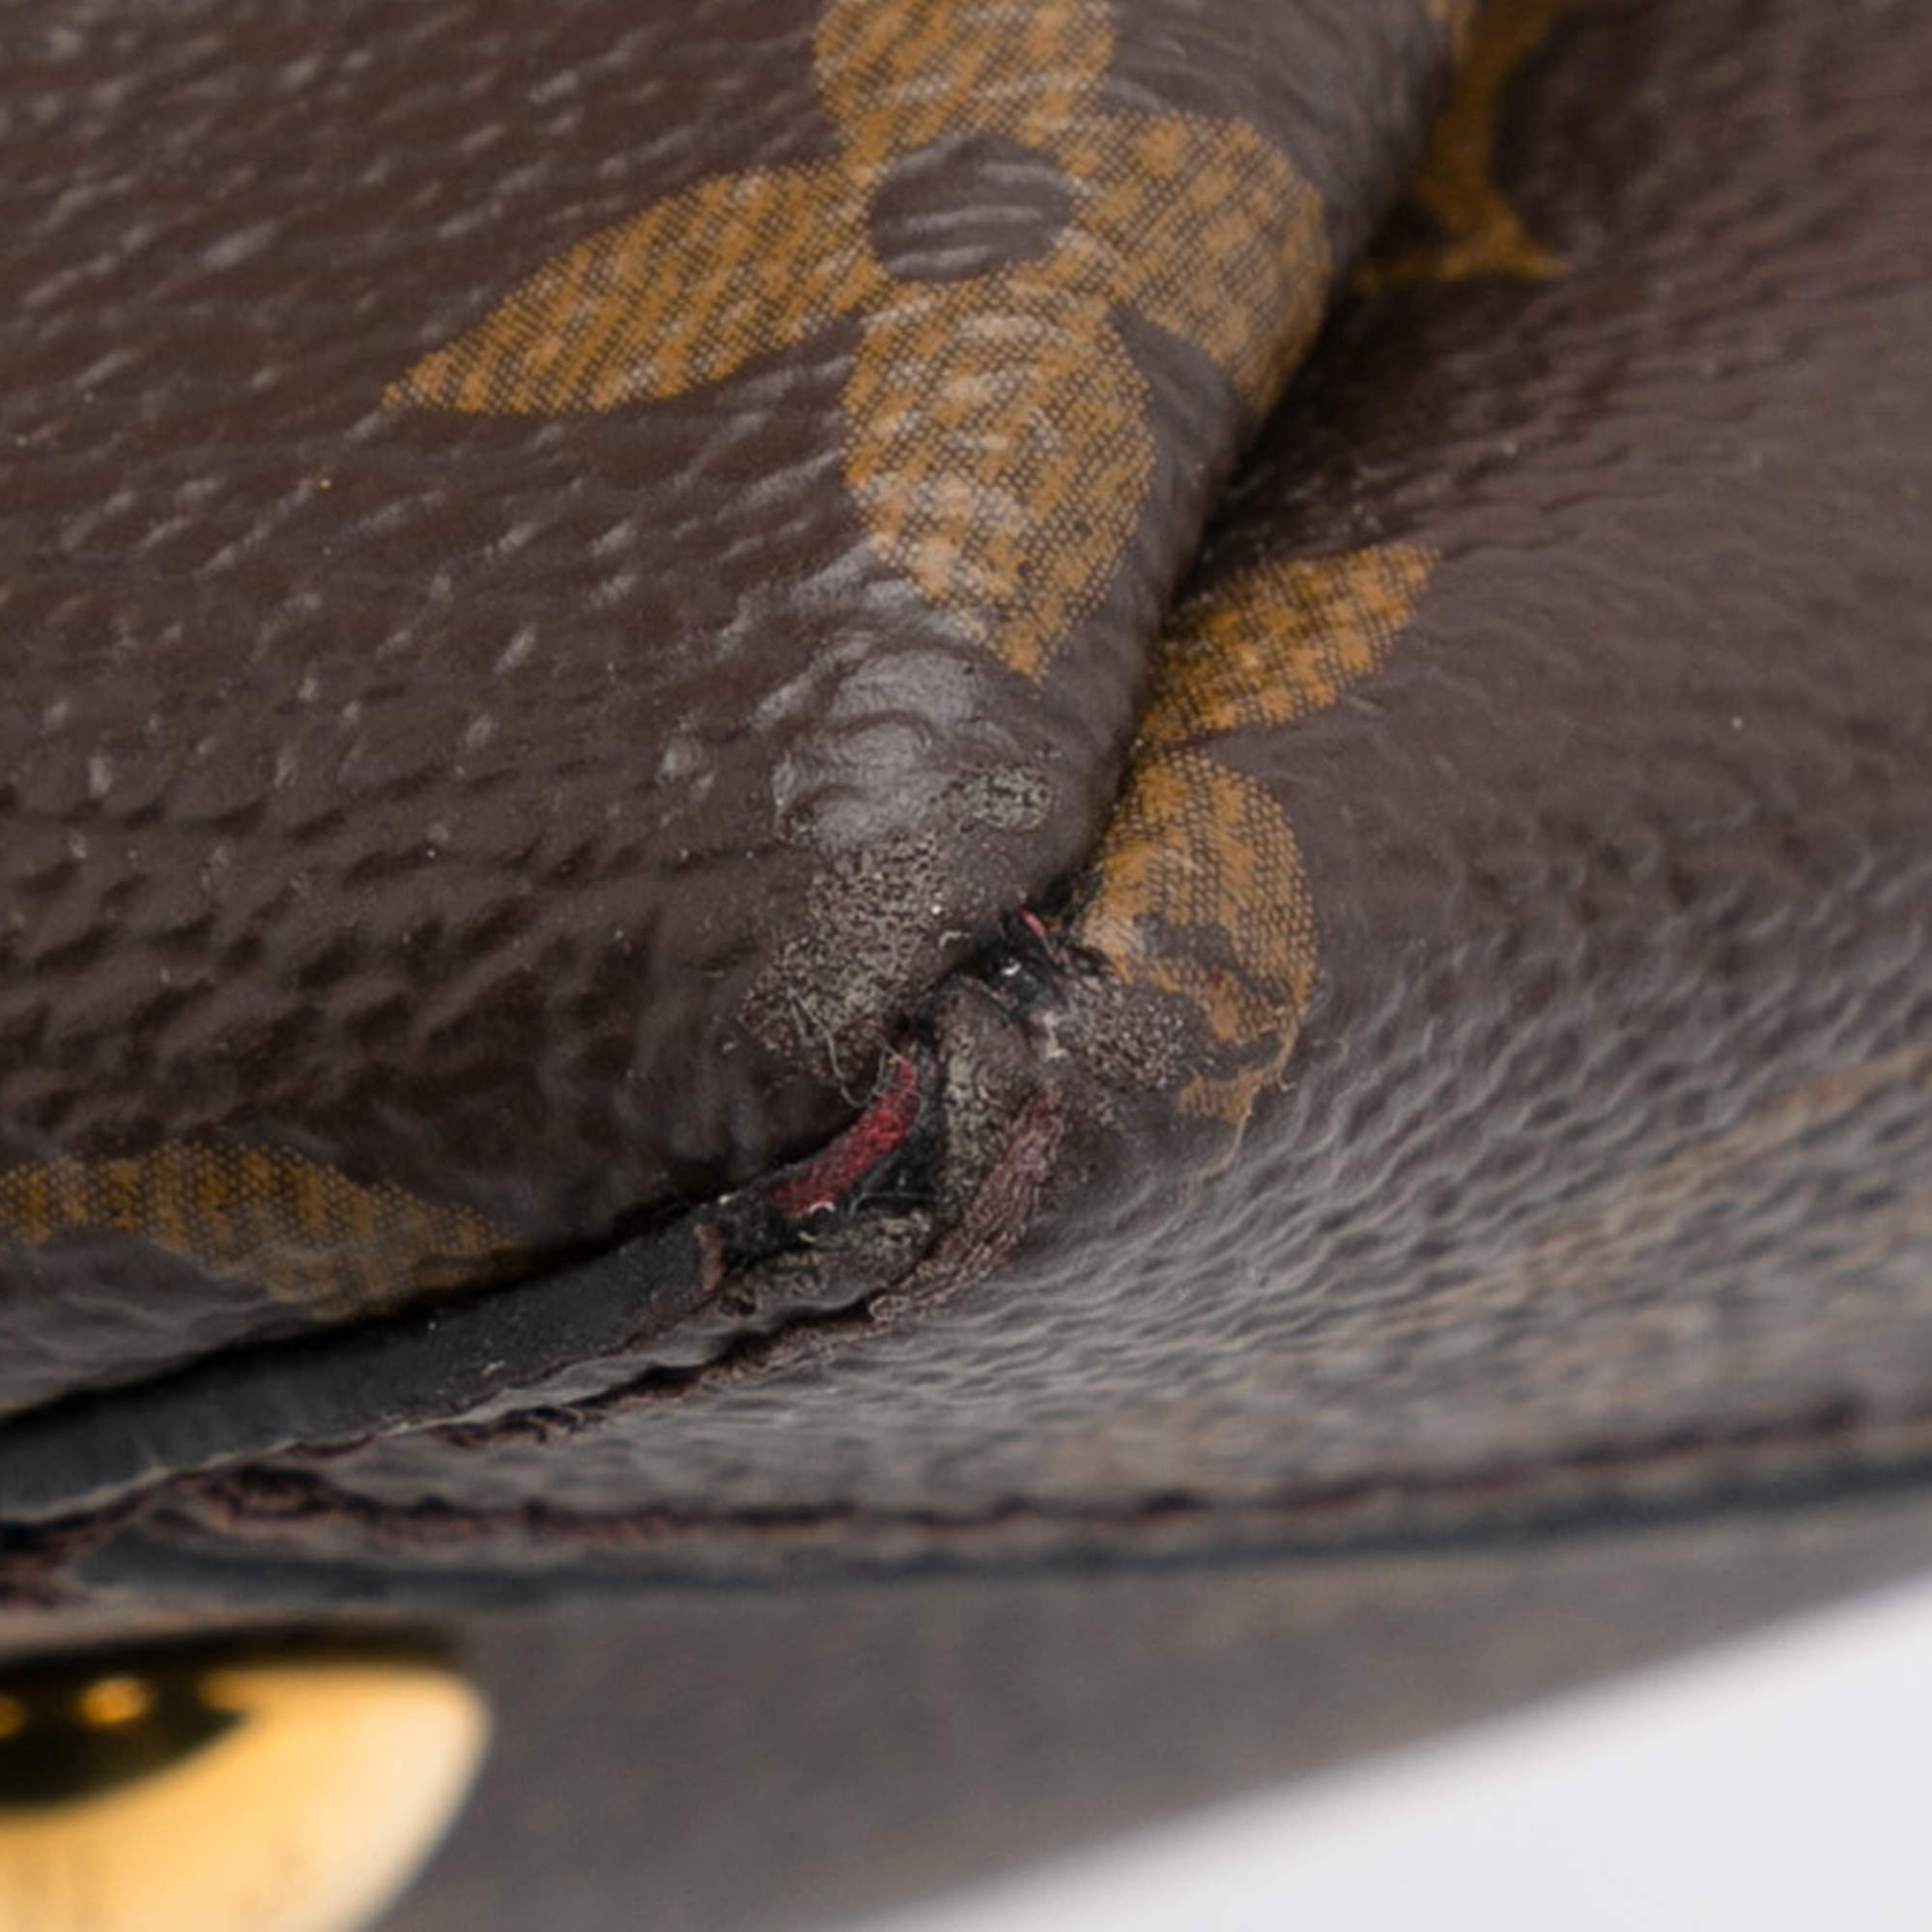 Flower tote cloth handbag Louis Vuitton Brown in Cloth - 26087955